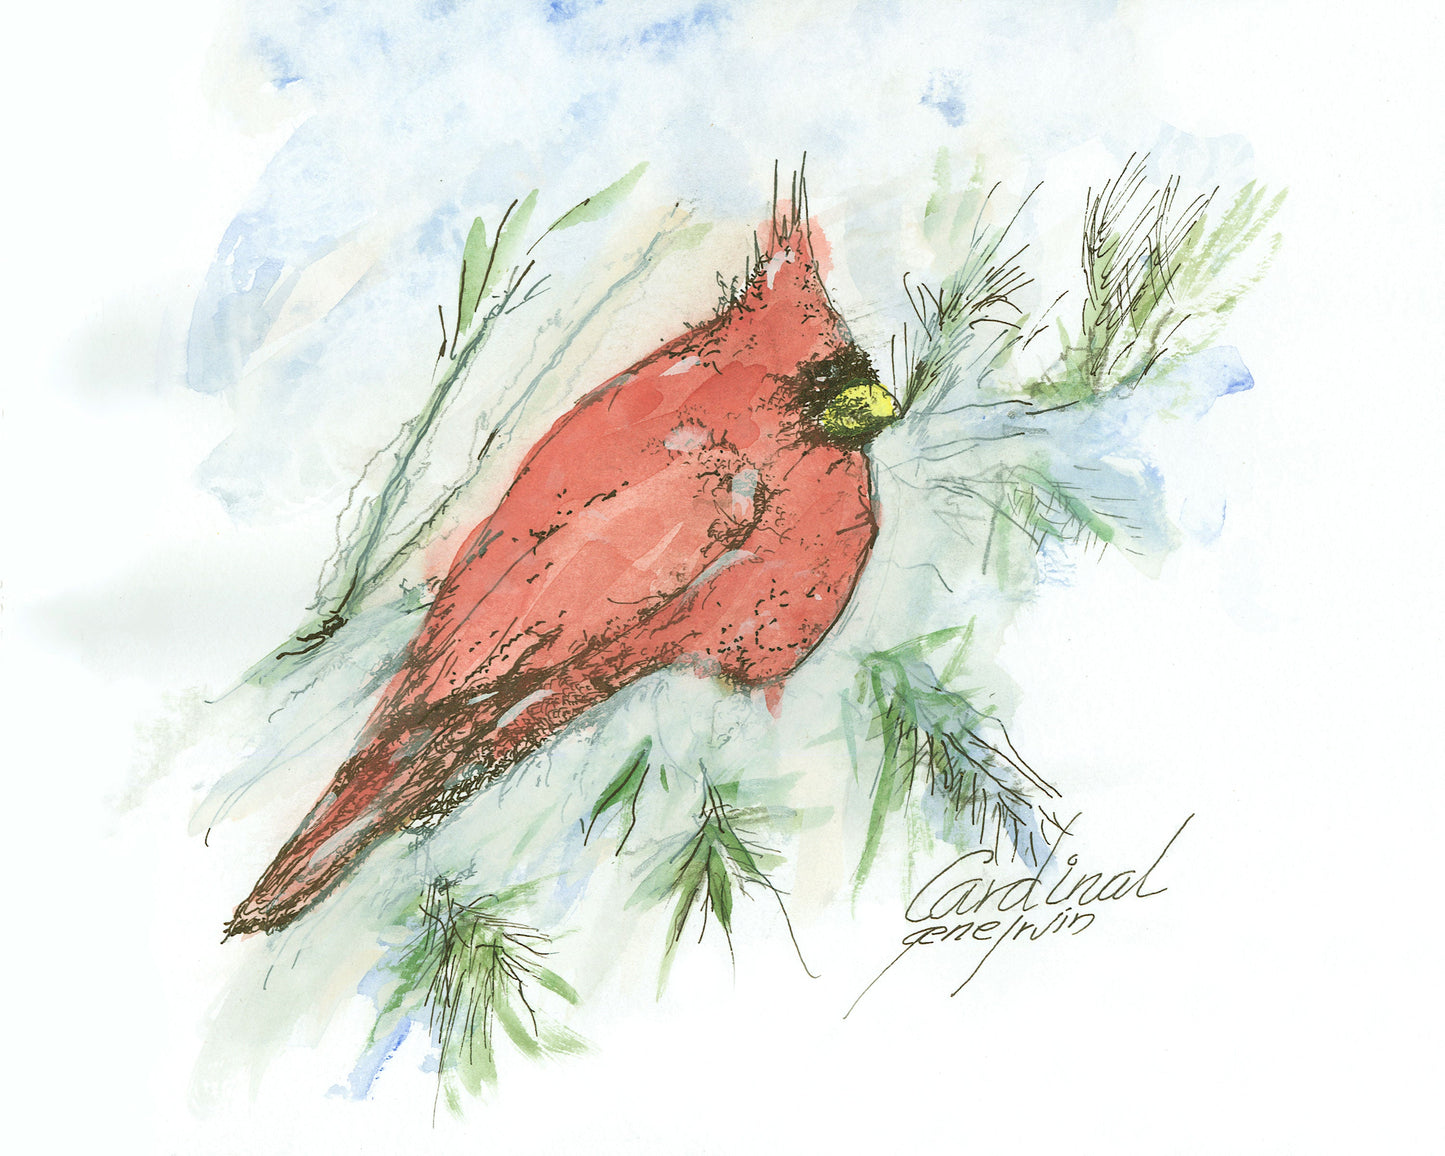 Cardinal Original